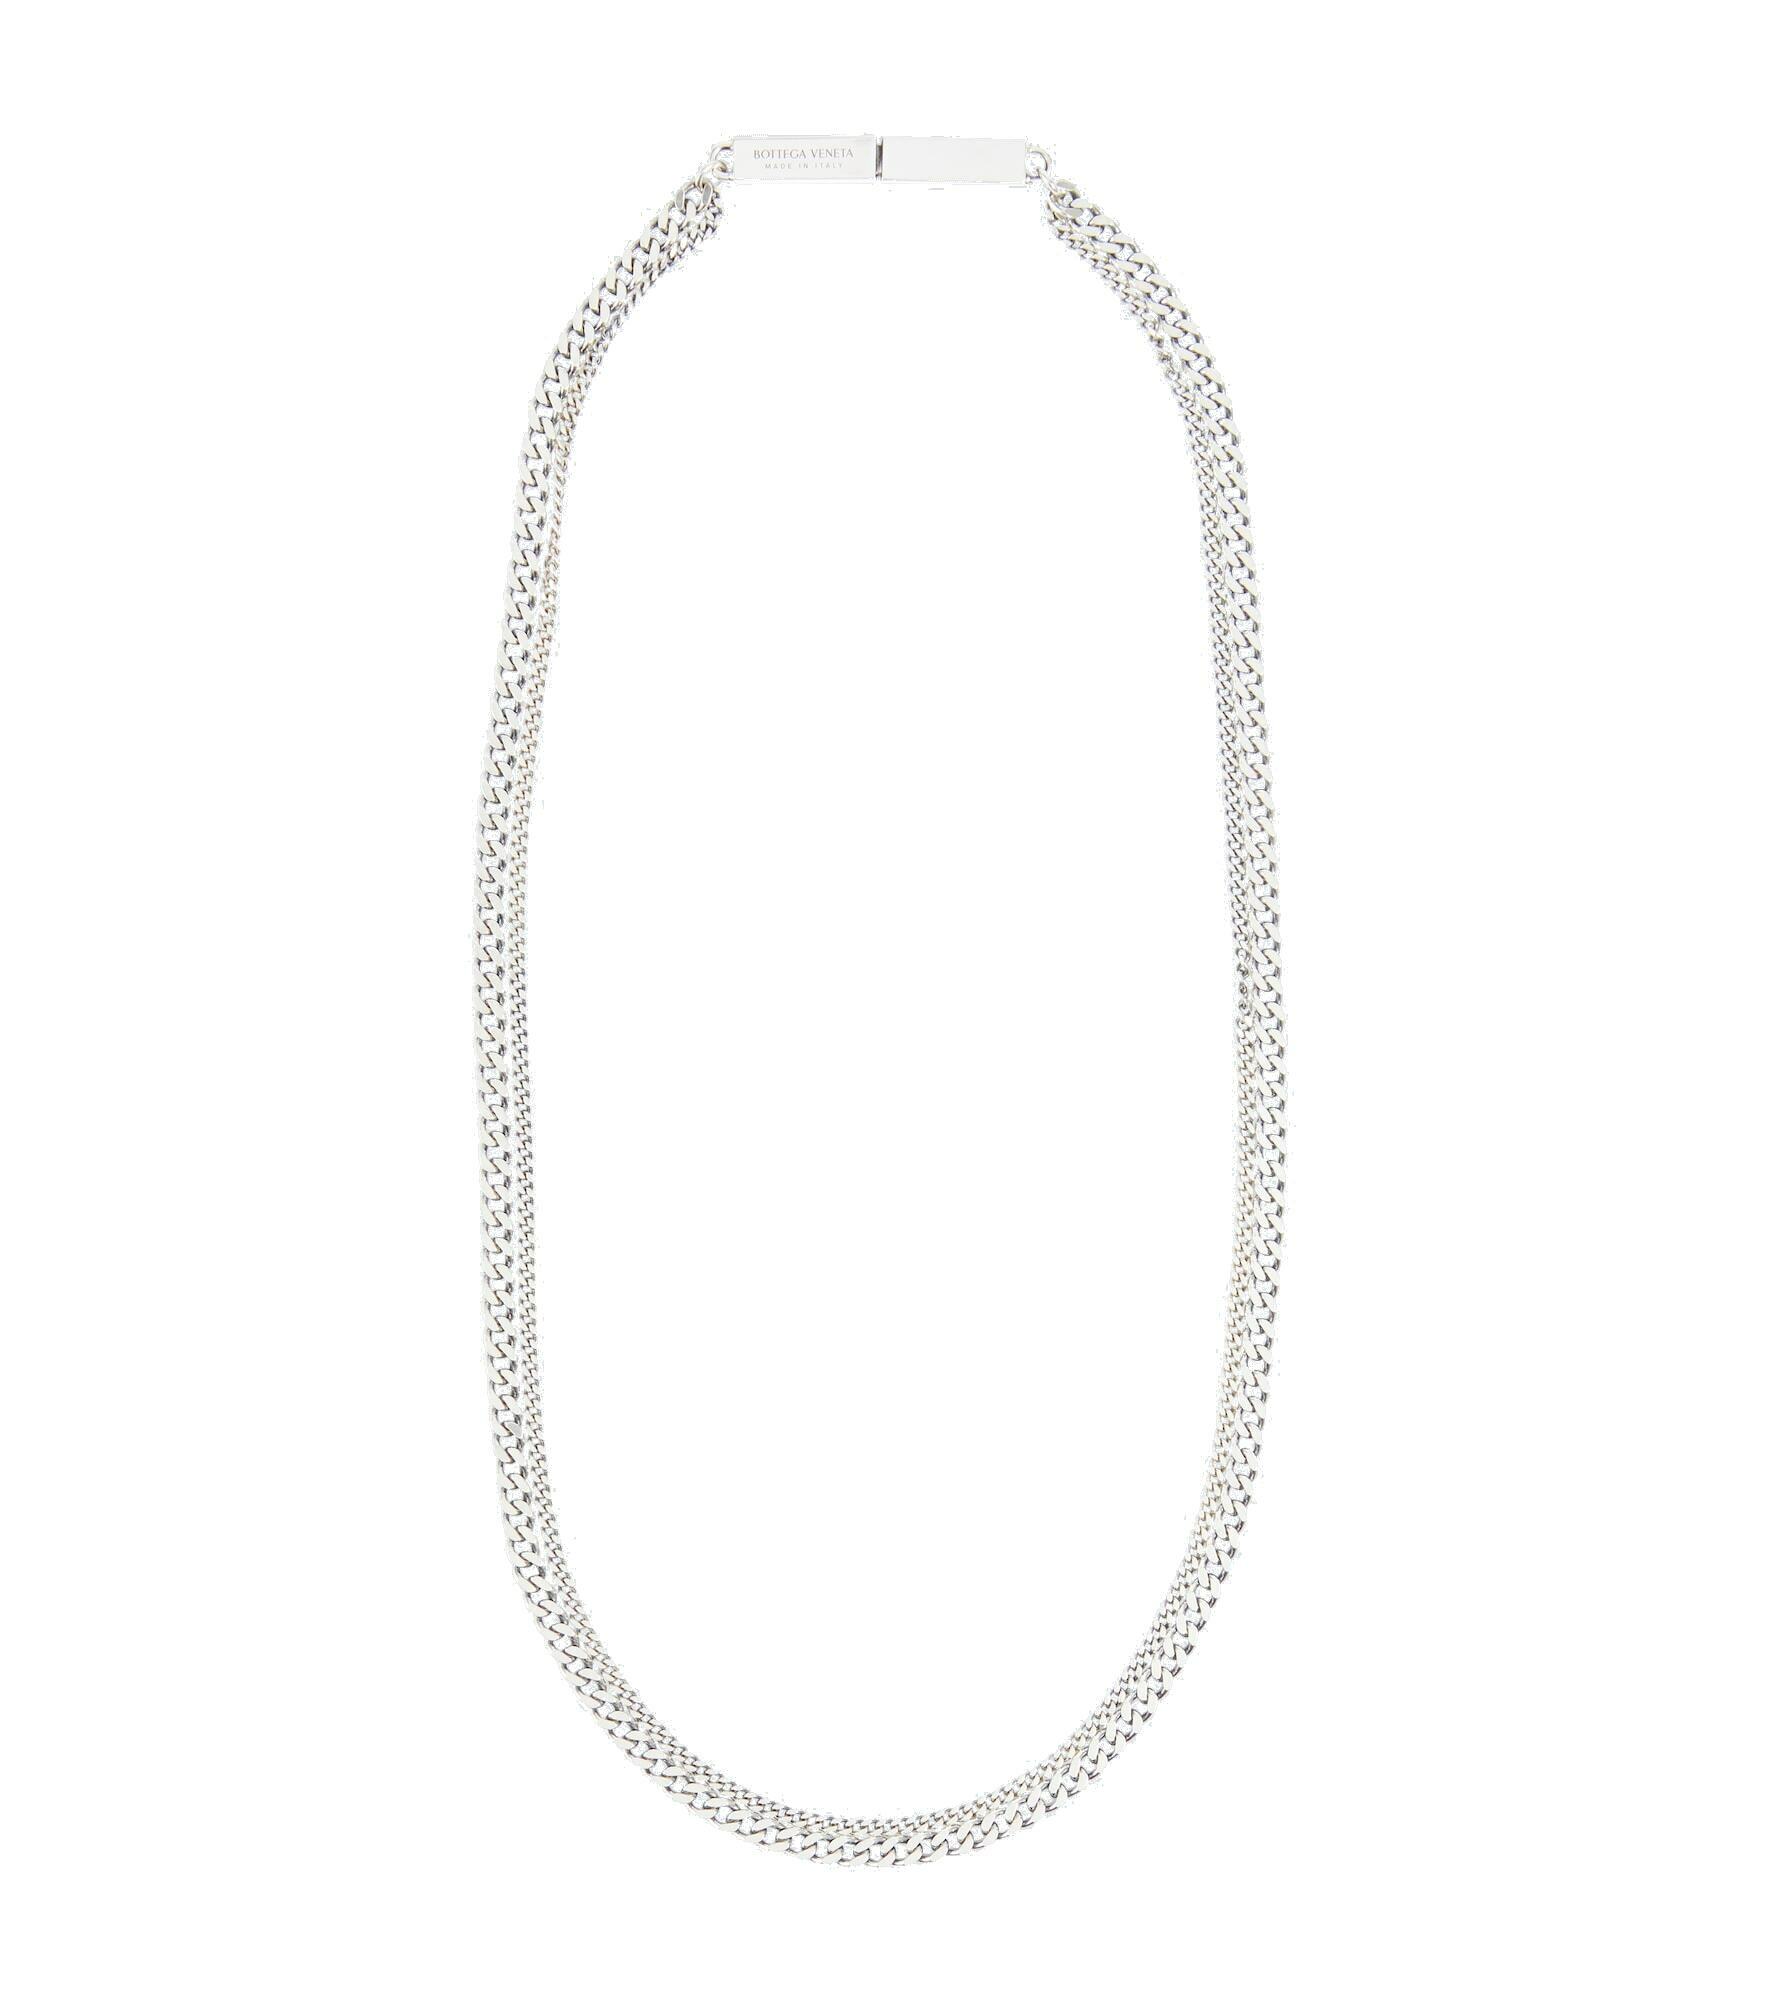 Bottega Veneta - Chains sterling silver chain necklace Bottega Veneta